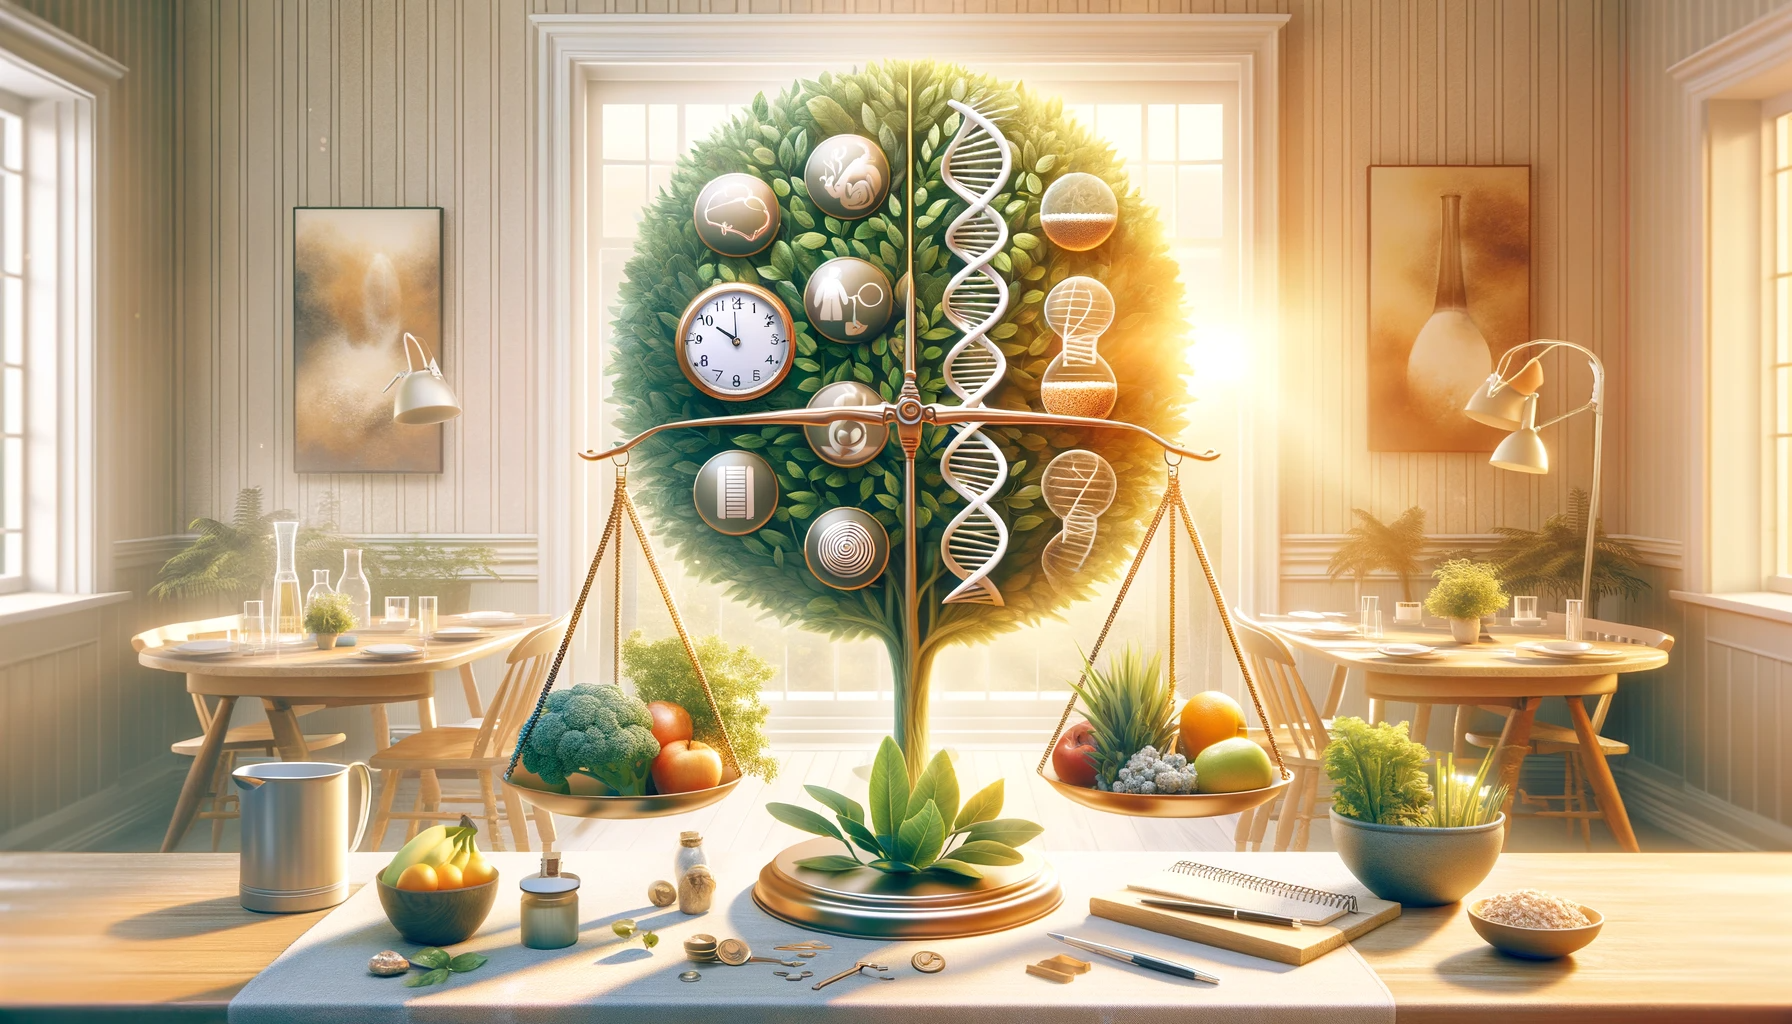 Représentation symbolique des facteurs de fertilité avec une plante saine, une horloge, une structure d'ADN et une alimentation équilibrée